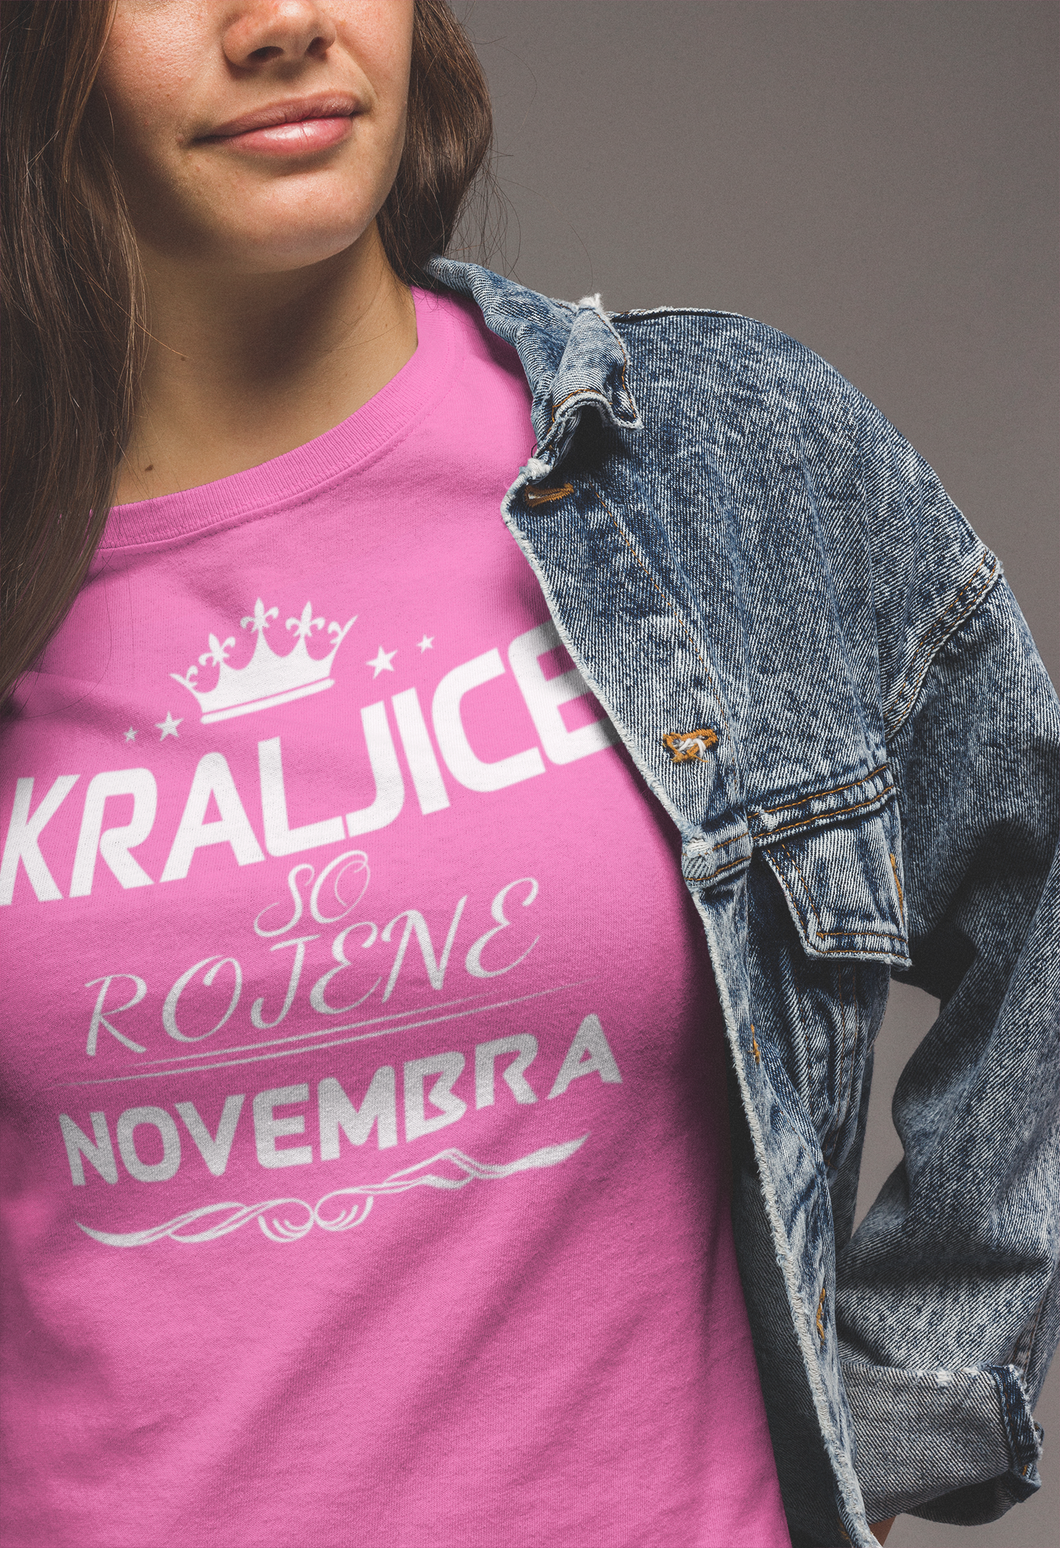 Outlet Majica Kraljice So Rojene - Novembra